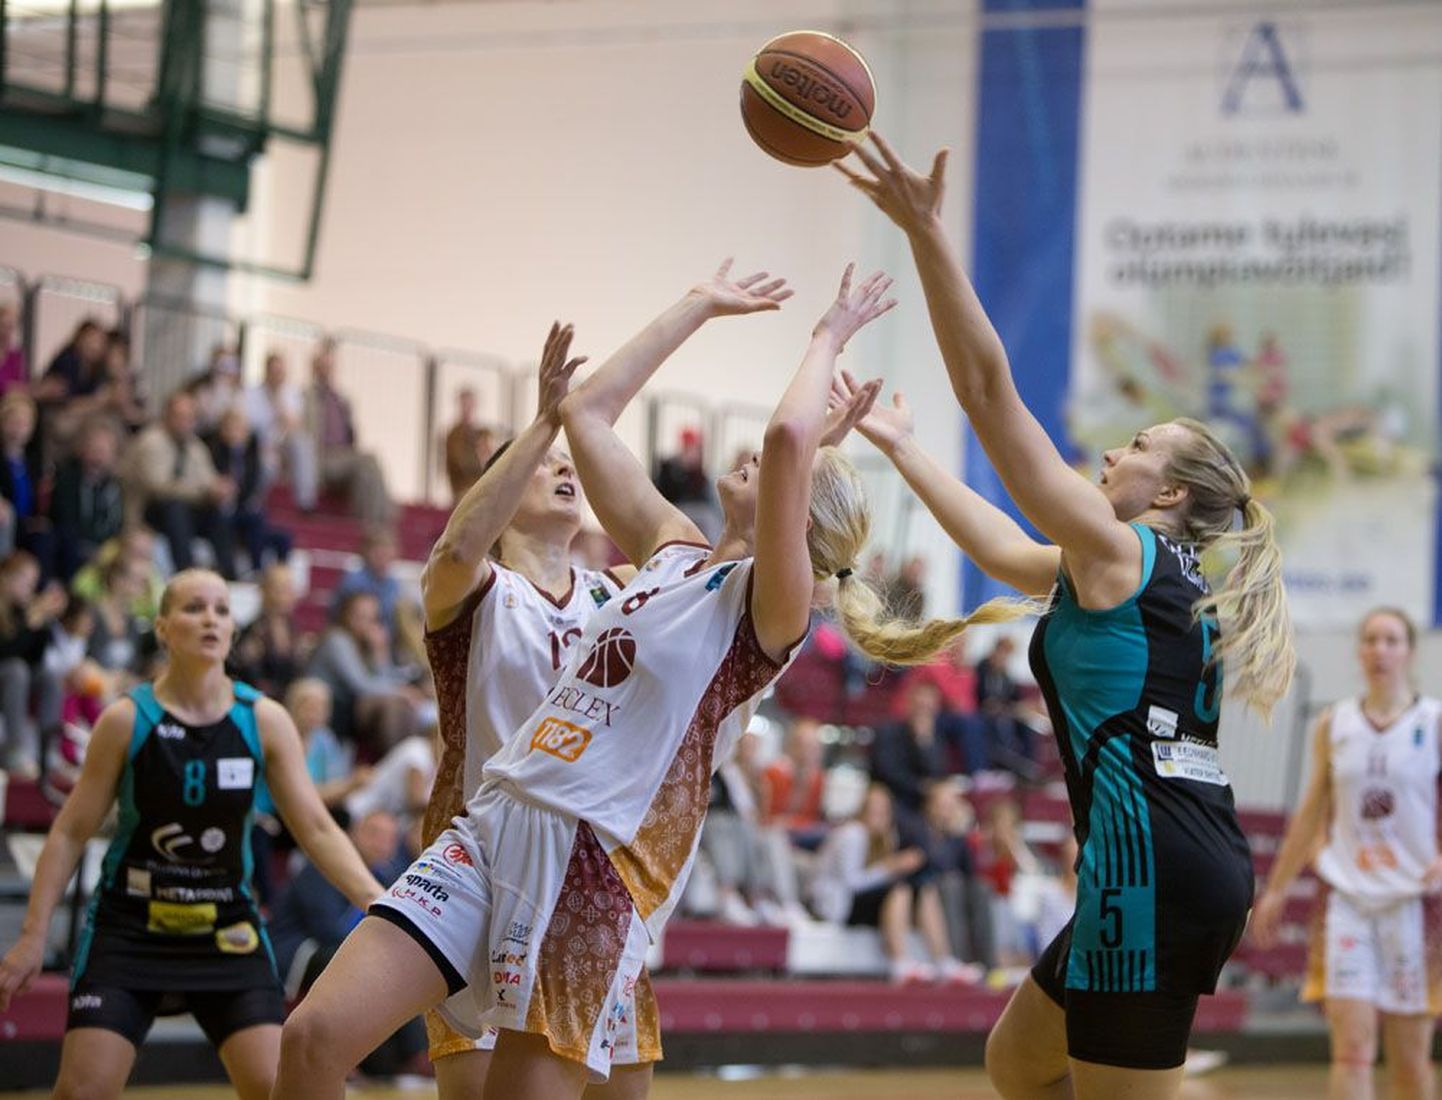 Eesti naiste korvpalli meistriliigas peeti eile finaalseeria neljas kohtumine, milles Eclex/1182 (valges) alistas esimest korda Tallinna Ülikooli naiskonna.